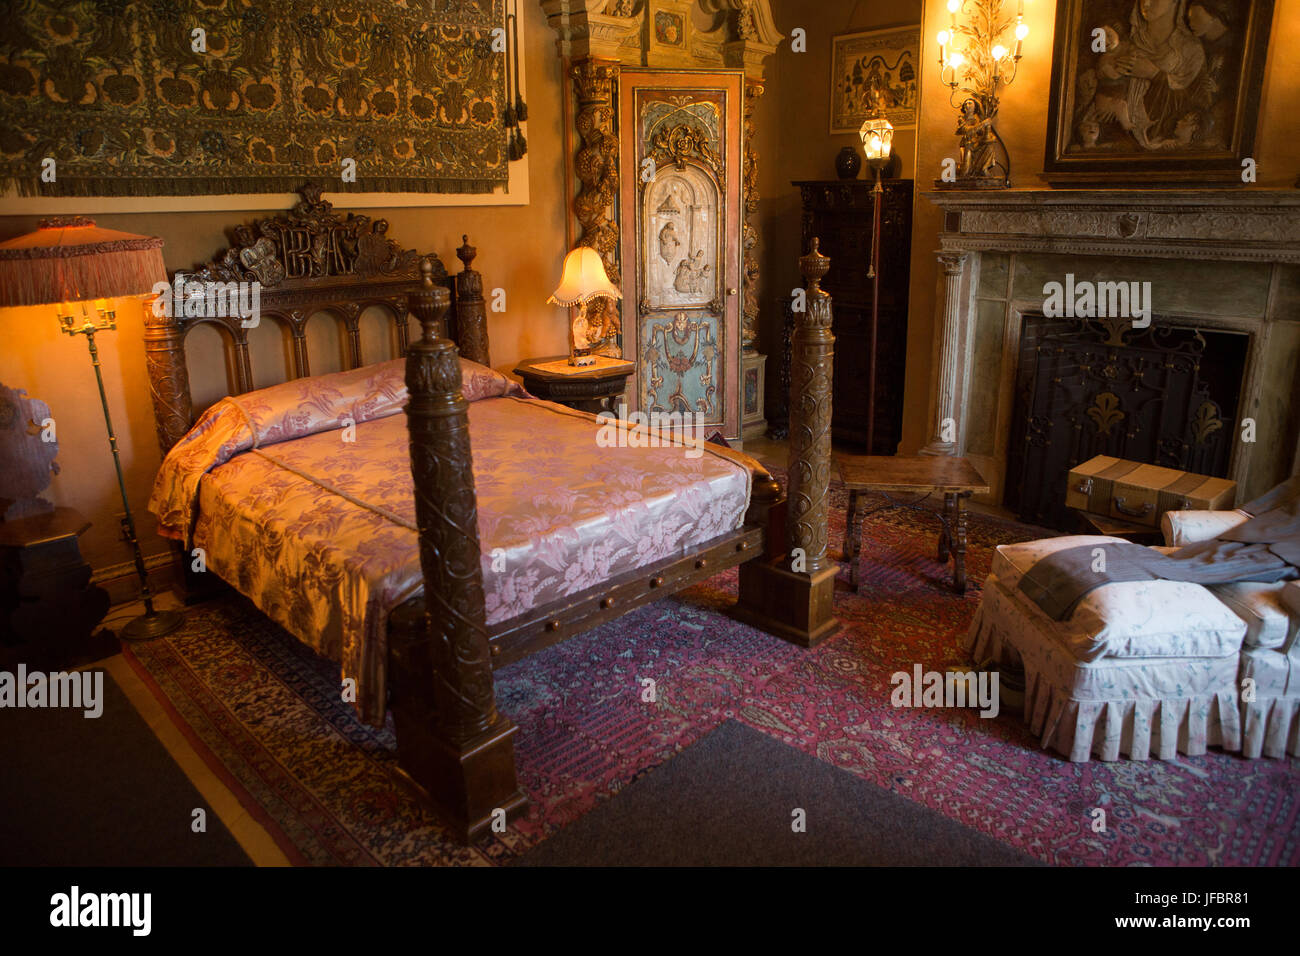 Una camera da letto arredata con mobili, arazzi, artwork e ornati in apparecchi di illuminazione. Foto Stock